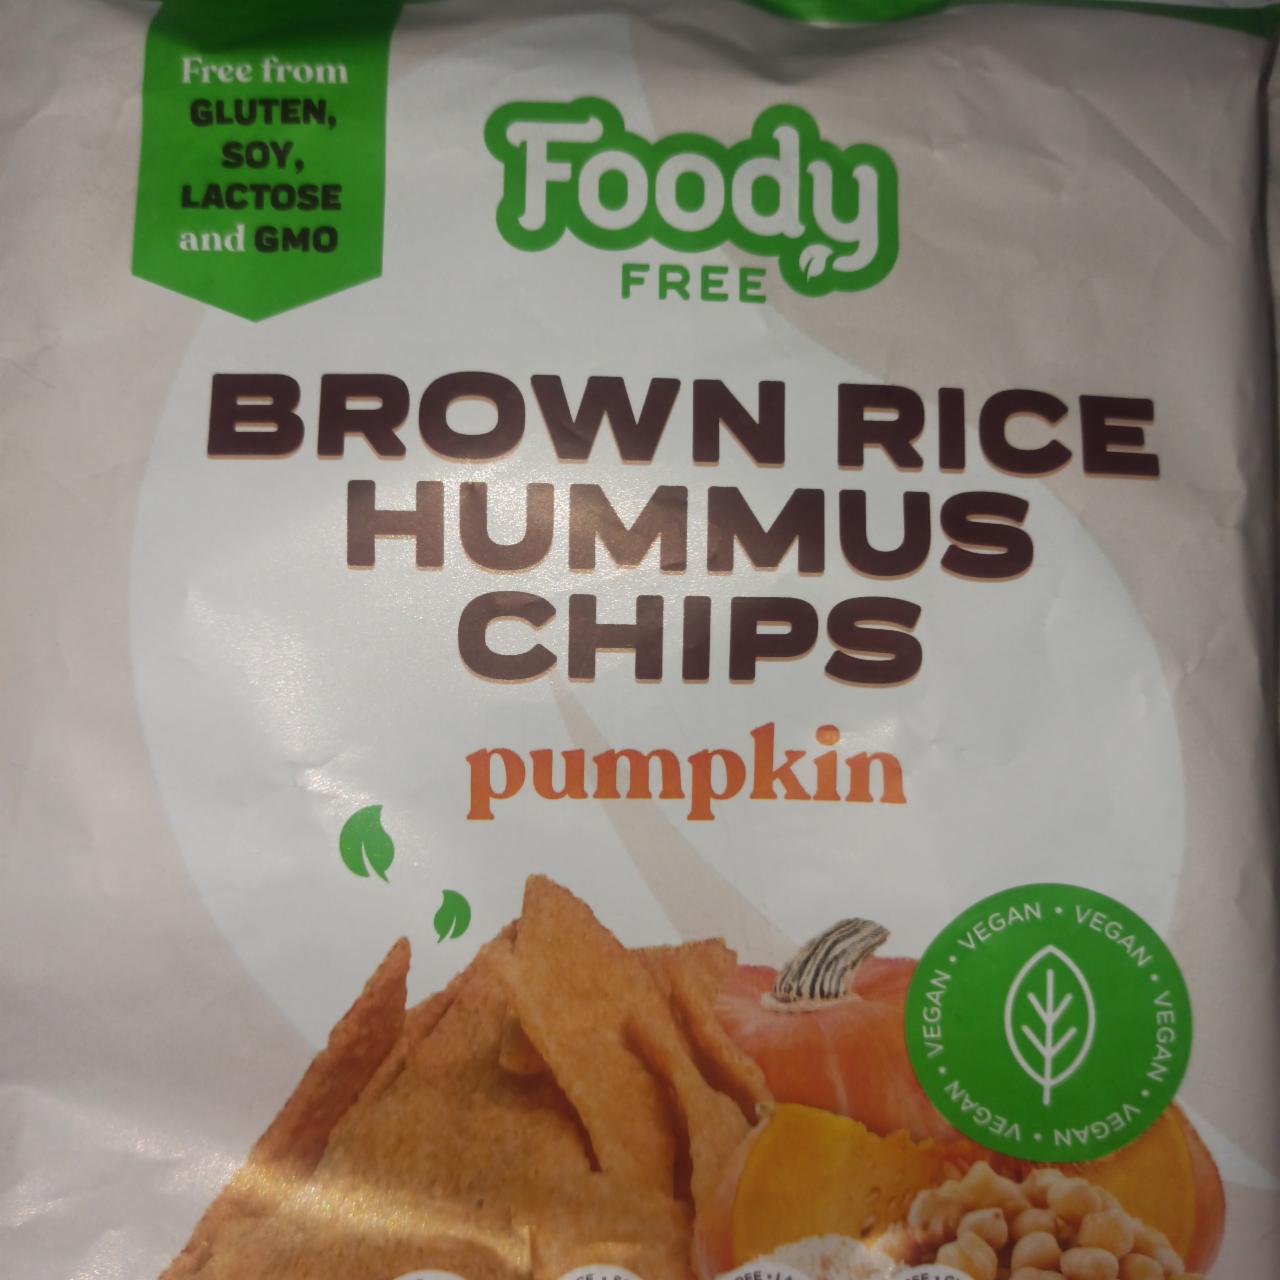 Képek - Brown rice hummus chips pumpkin Foody Free